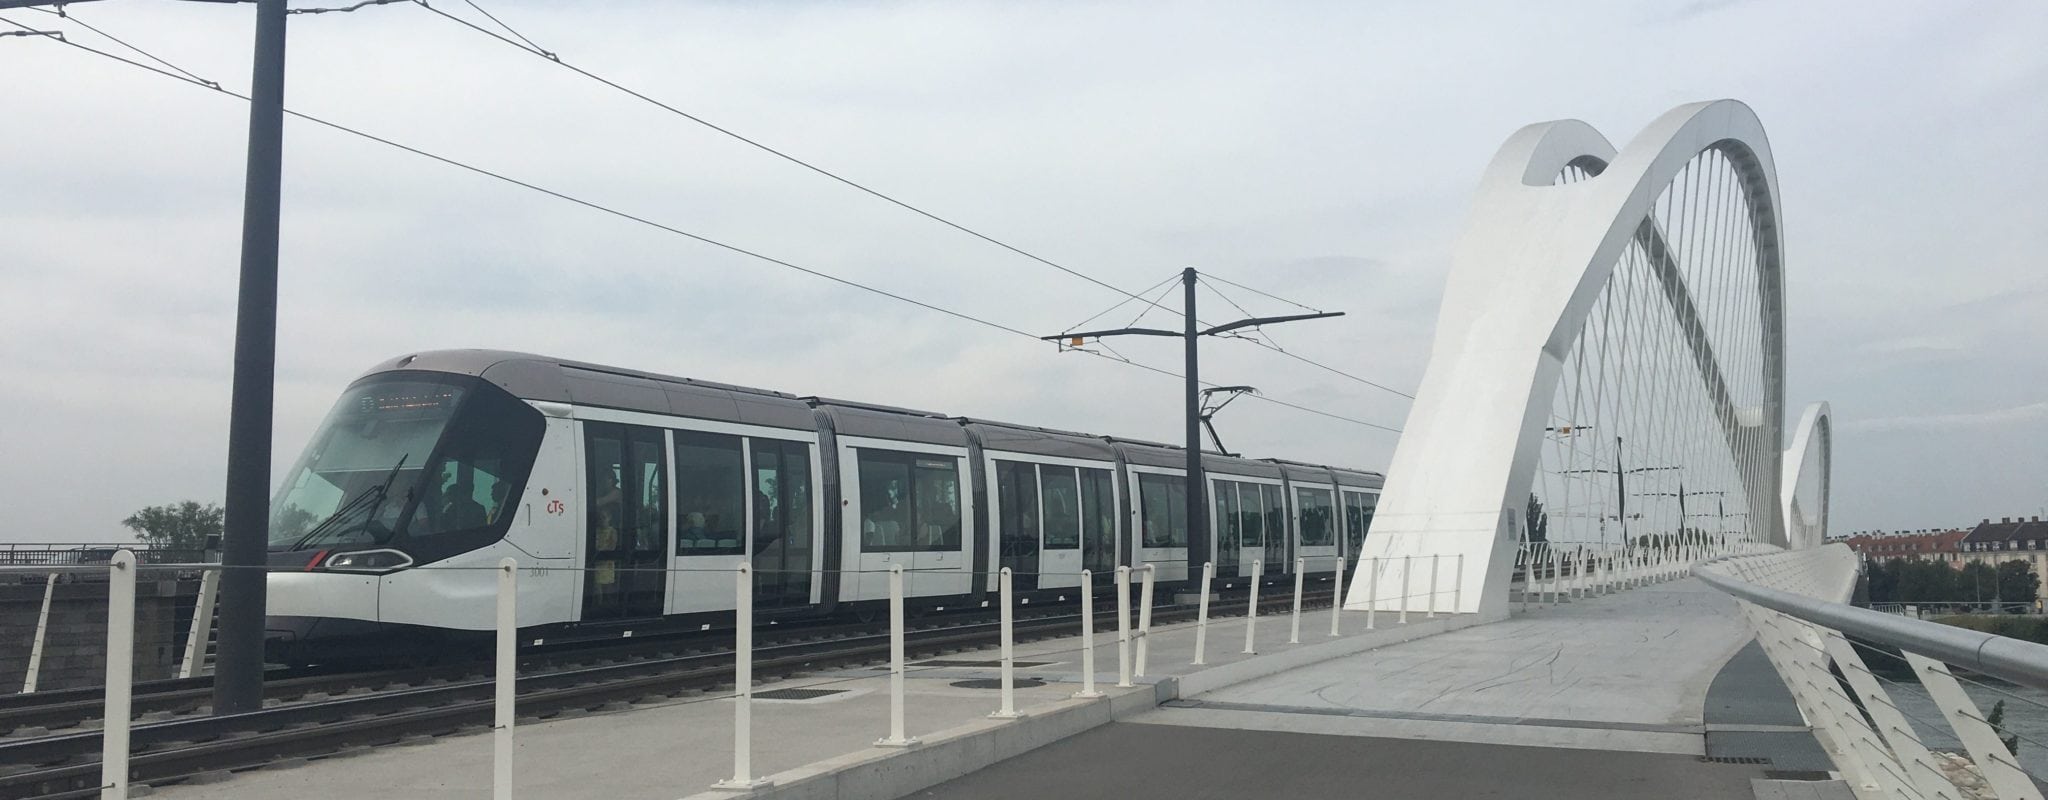 Les commerçants de Kehl ravis par l’extension du tram de Strasbourg